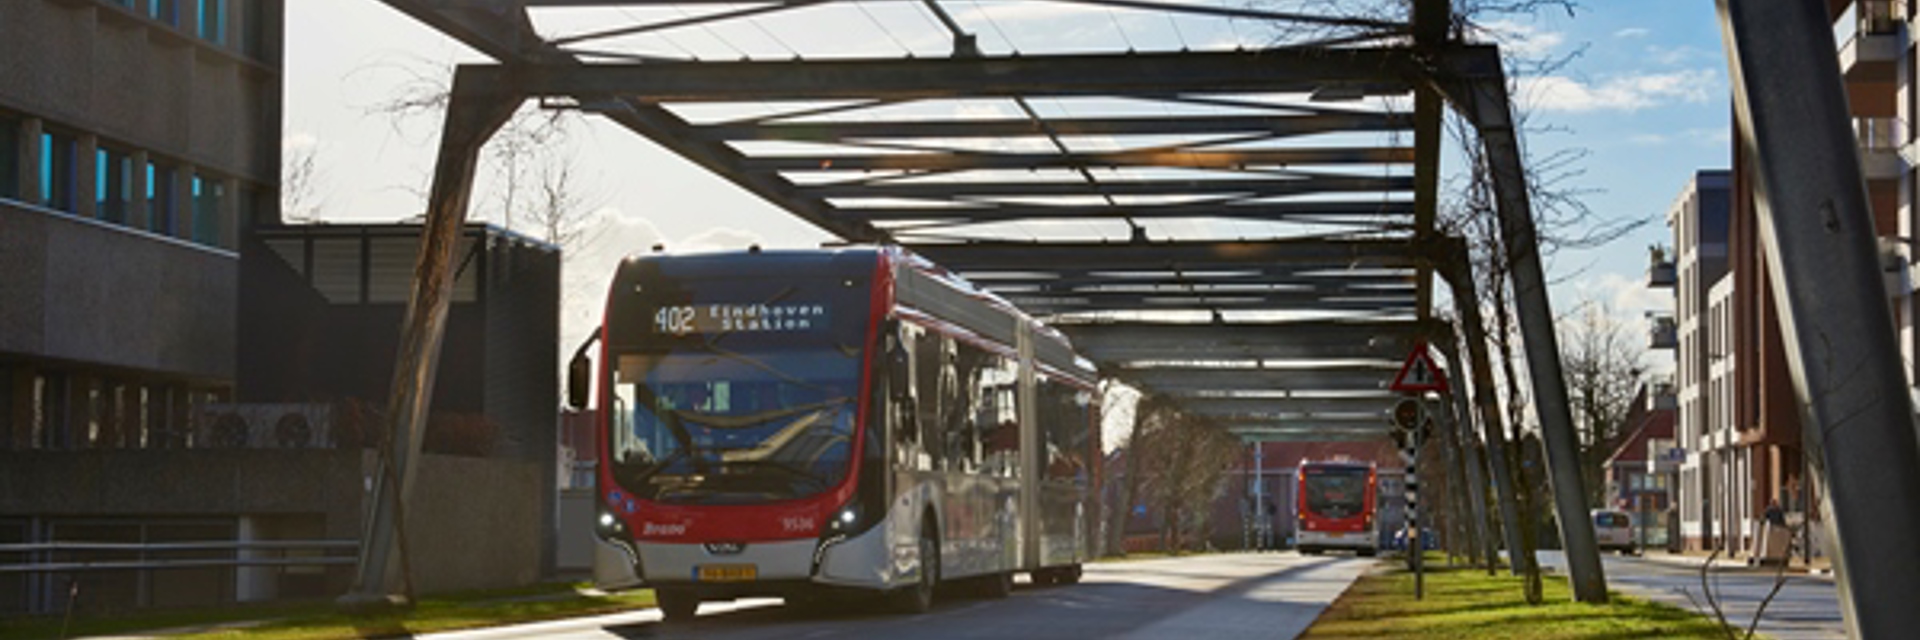 Foto van elektrische bus in Eindhoven.jpg